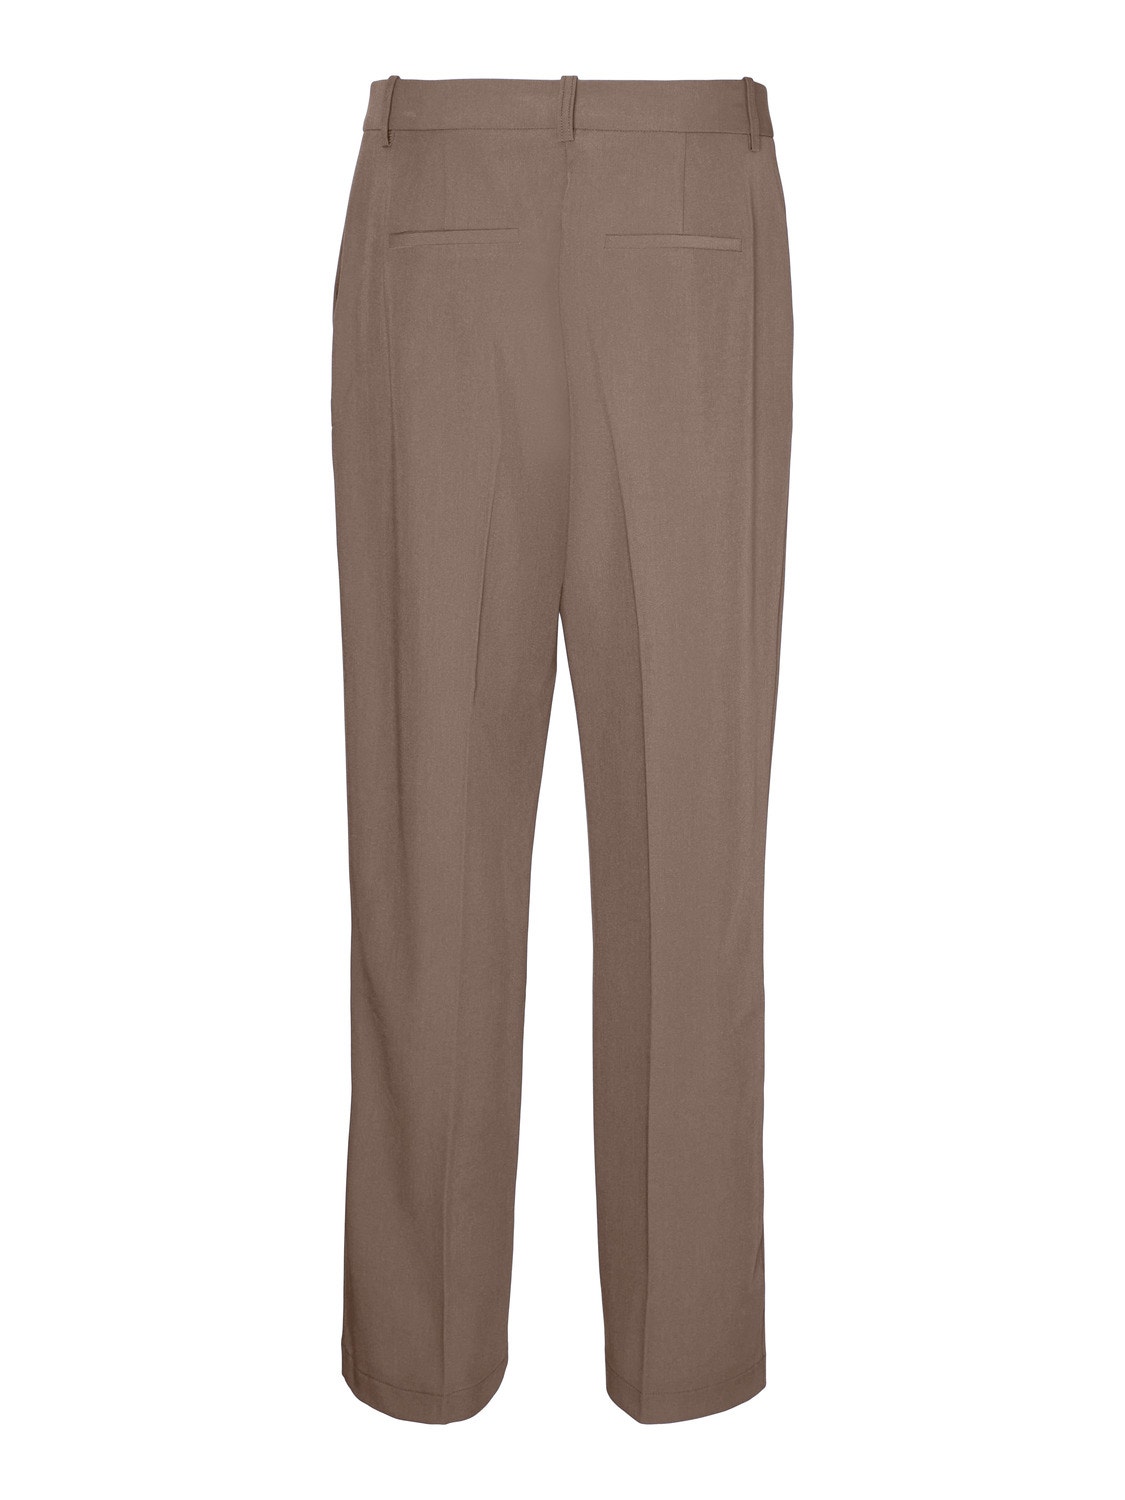 Vero Moda VMTESSLIVA Trousers -Brown Lentil - 10291162